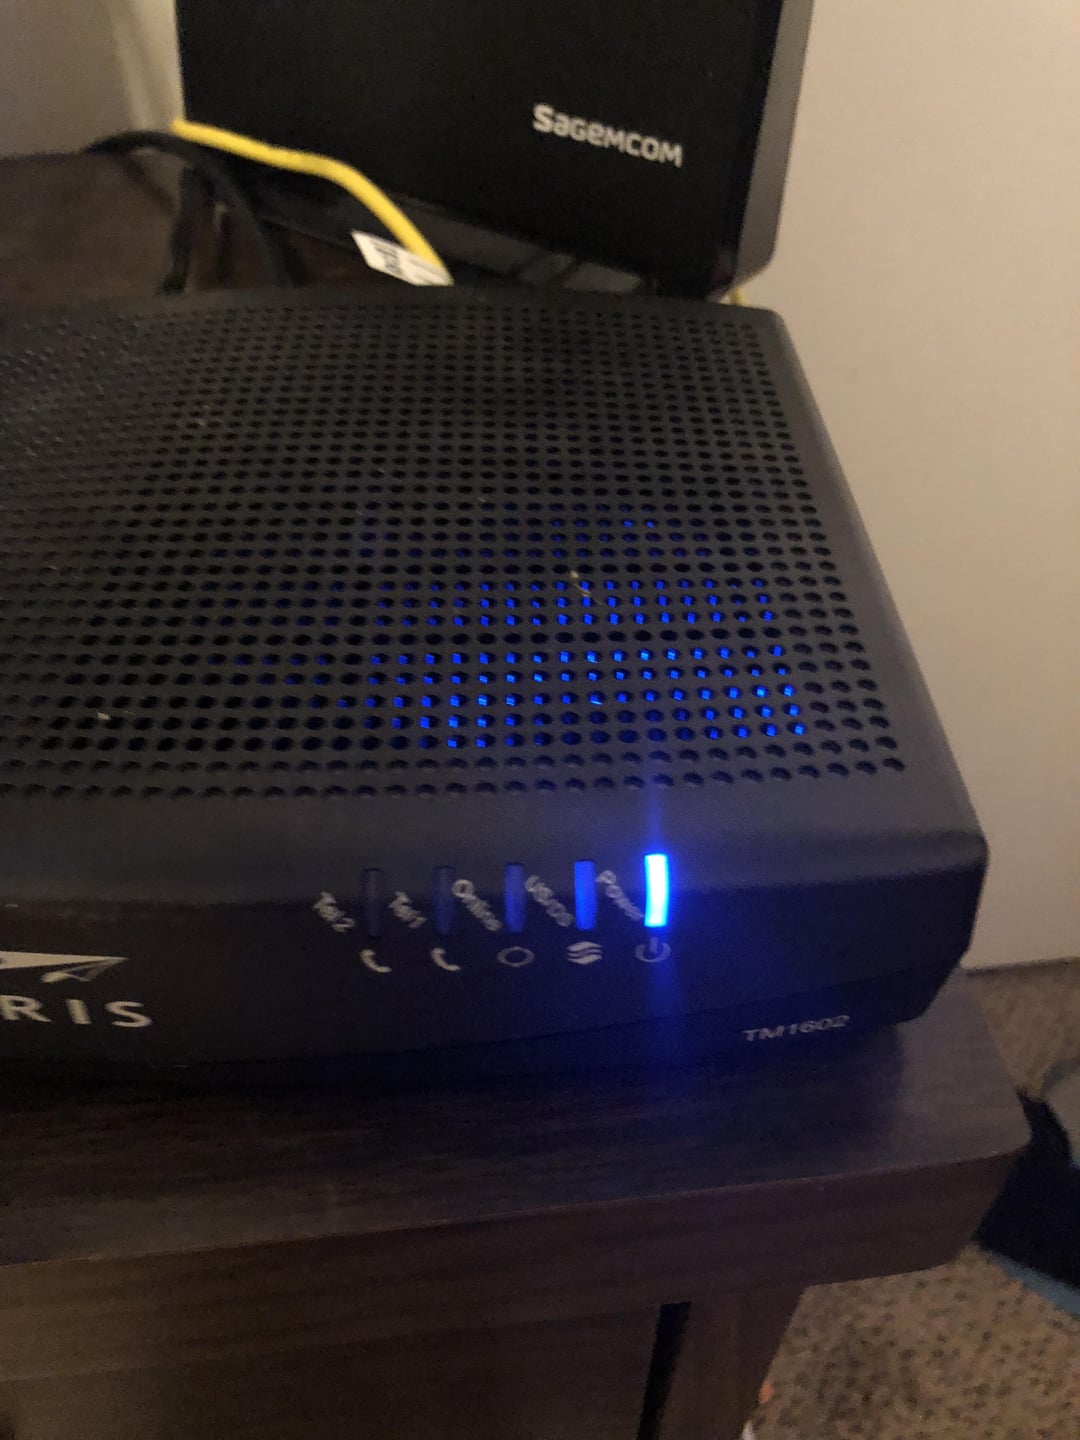 modem online light blinking